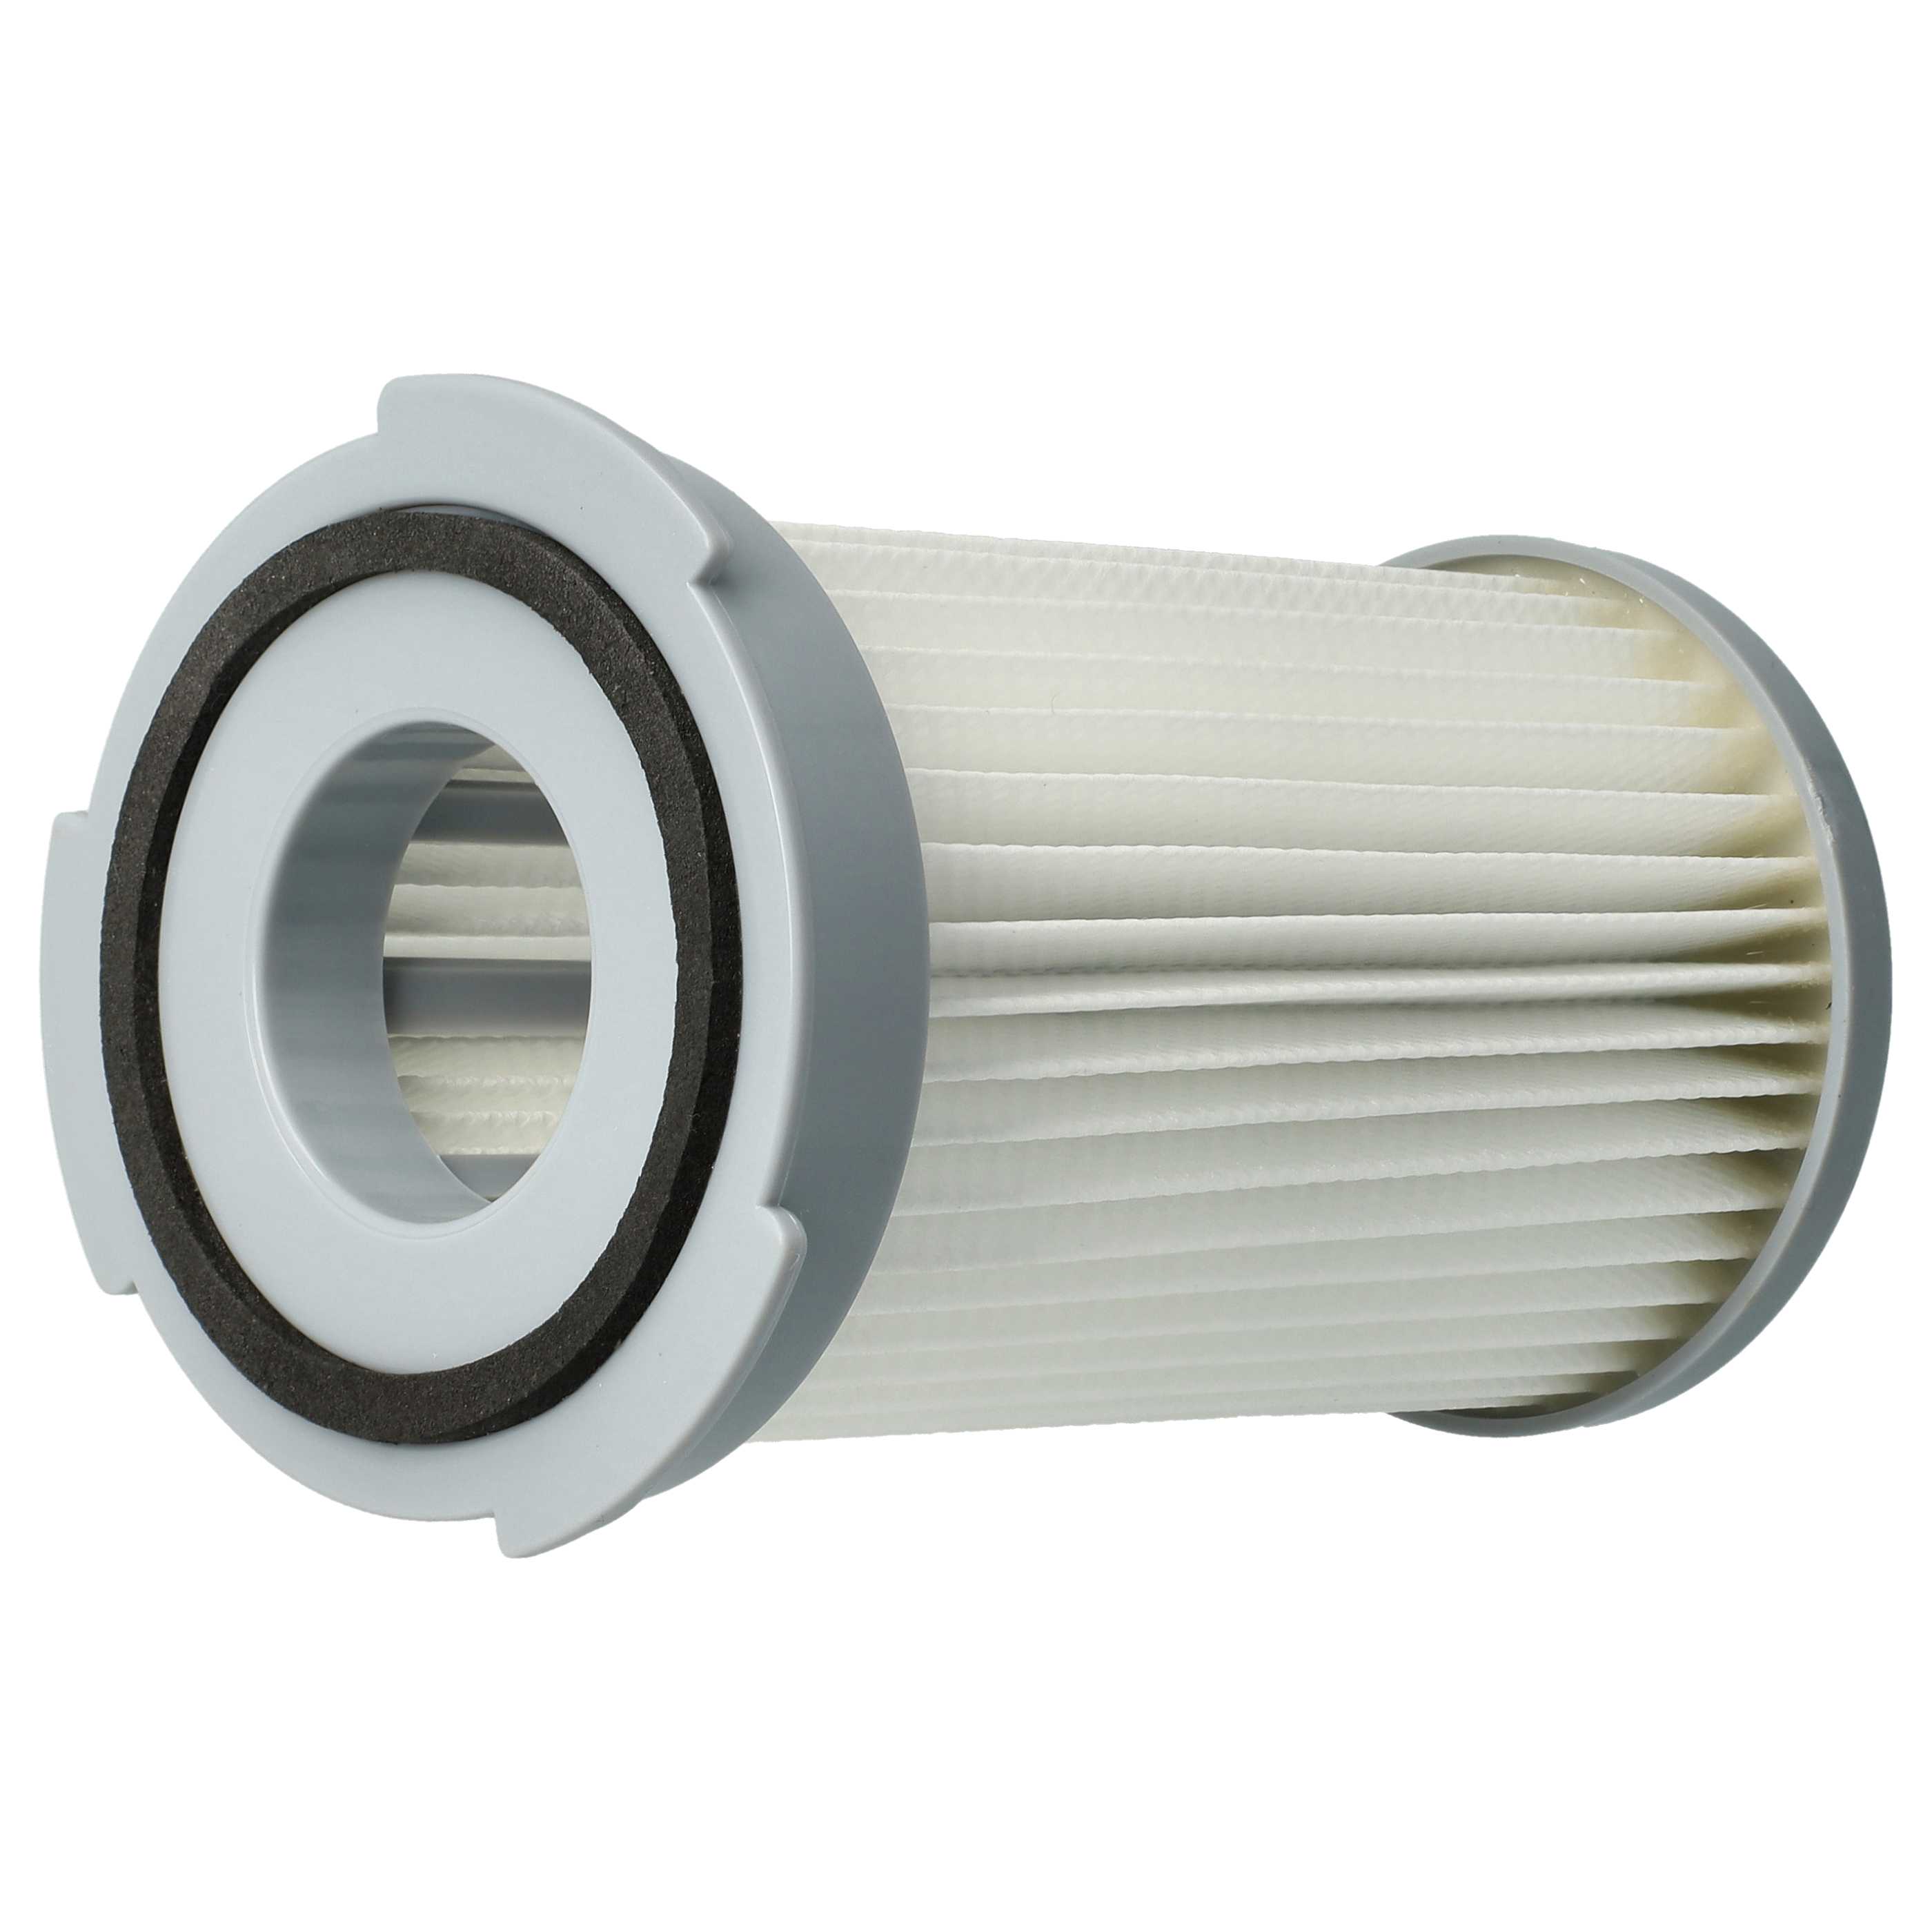 Filtro sostituisce Electrolux EF75B per aspirapolvere - filtro aria di scarico